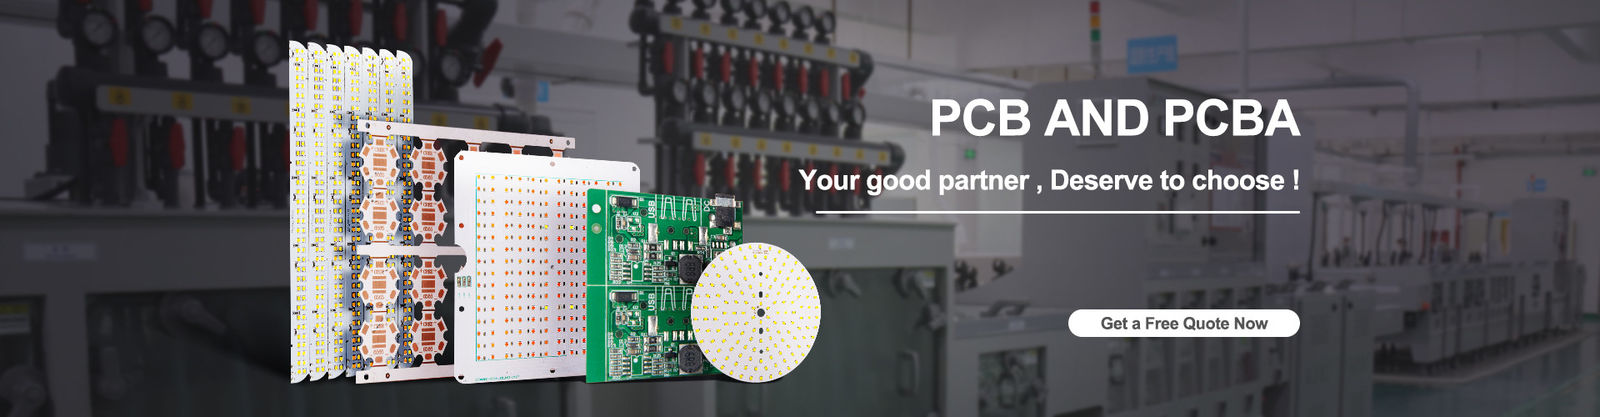 chất lượng Bảng LED PCB nhà máy sản xuất